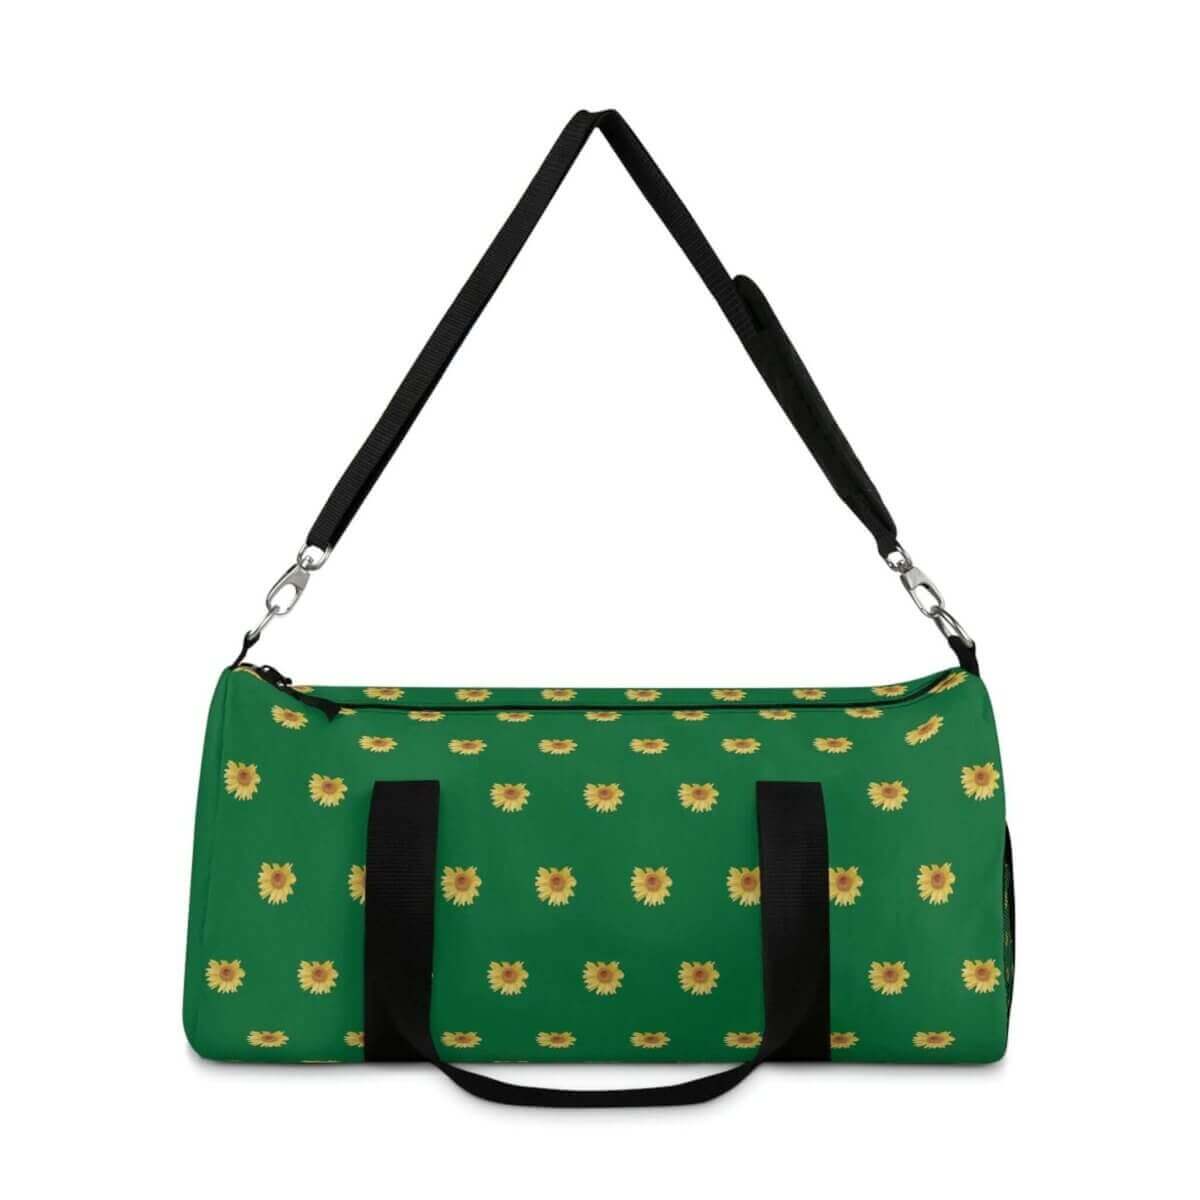 Duffel Bag - Green Sunny Sunflower Design - 0